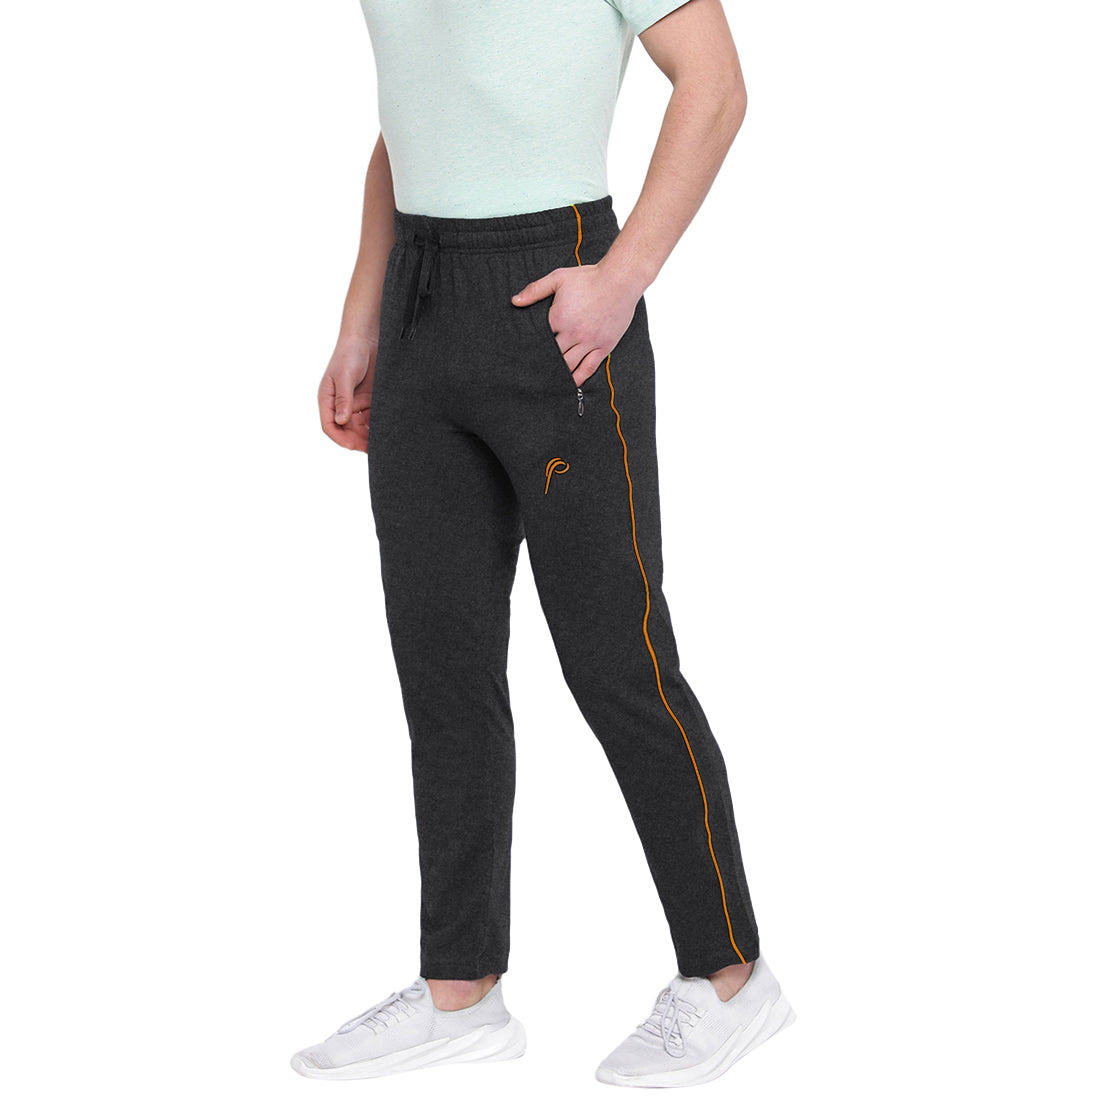 Buy Tracksuit Bottoms for Women Slim Joggings Pants Ladies Joggers  Sweatpants Tapered Leg Online at desertcartINDIA